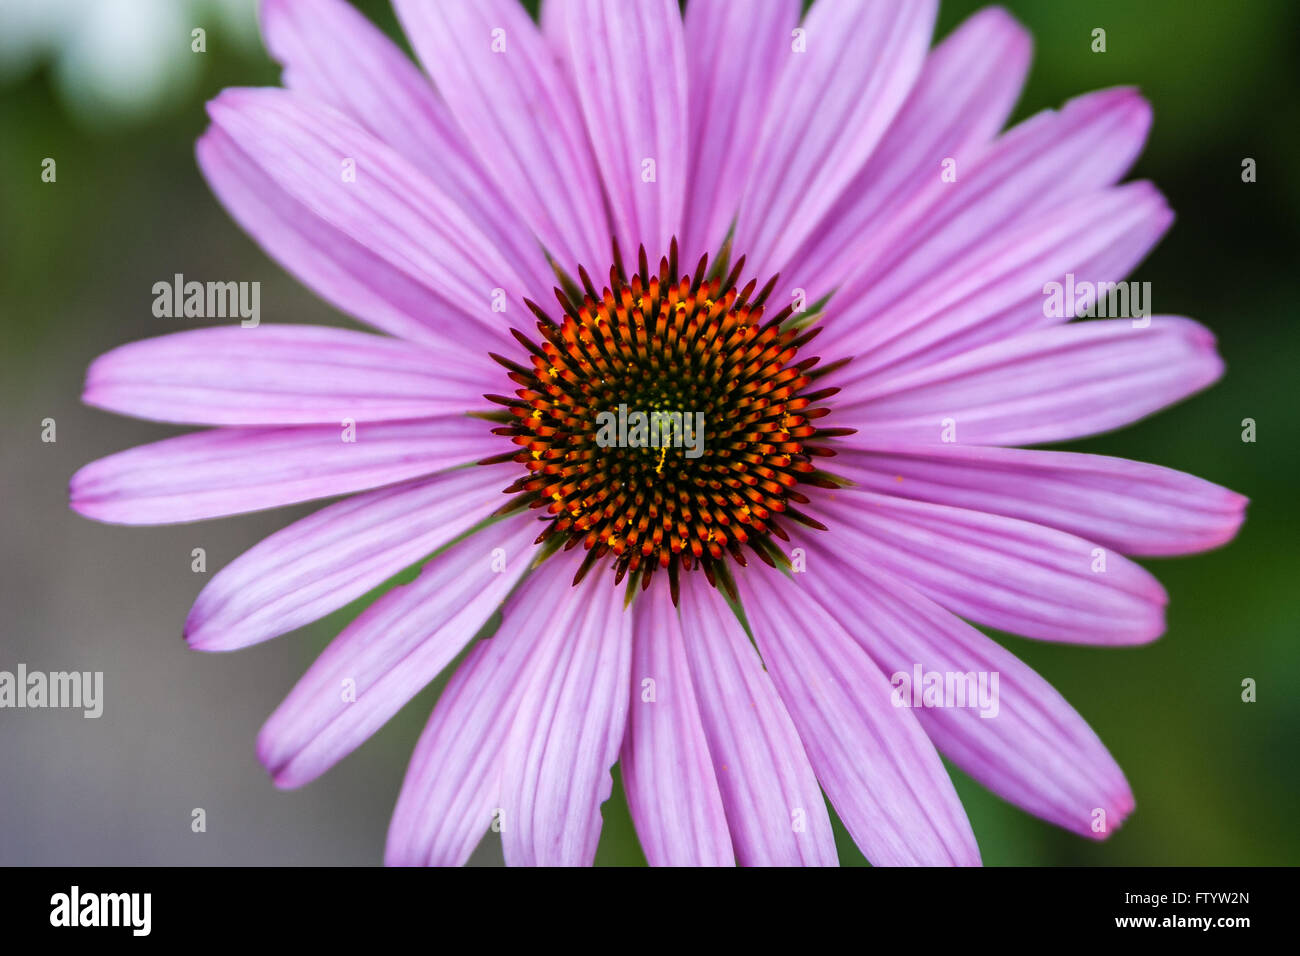 Echinacea purpurea; genere Asteraceae. Chiudere fino al di sopra di un prodotto a base di echinacea purpurea. Foto Stock